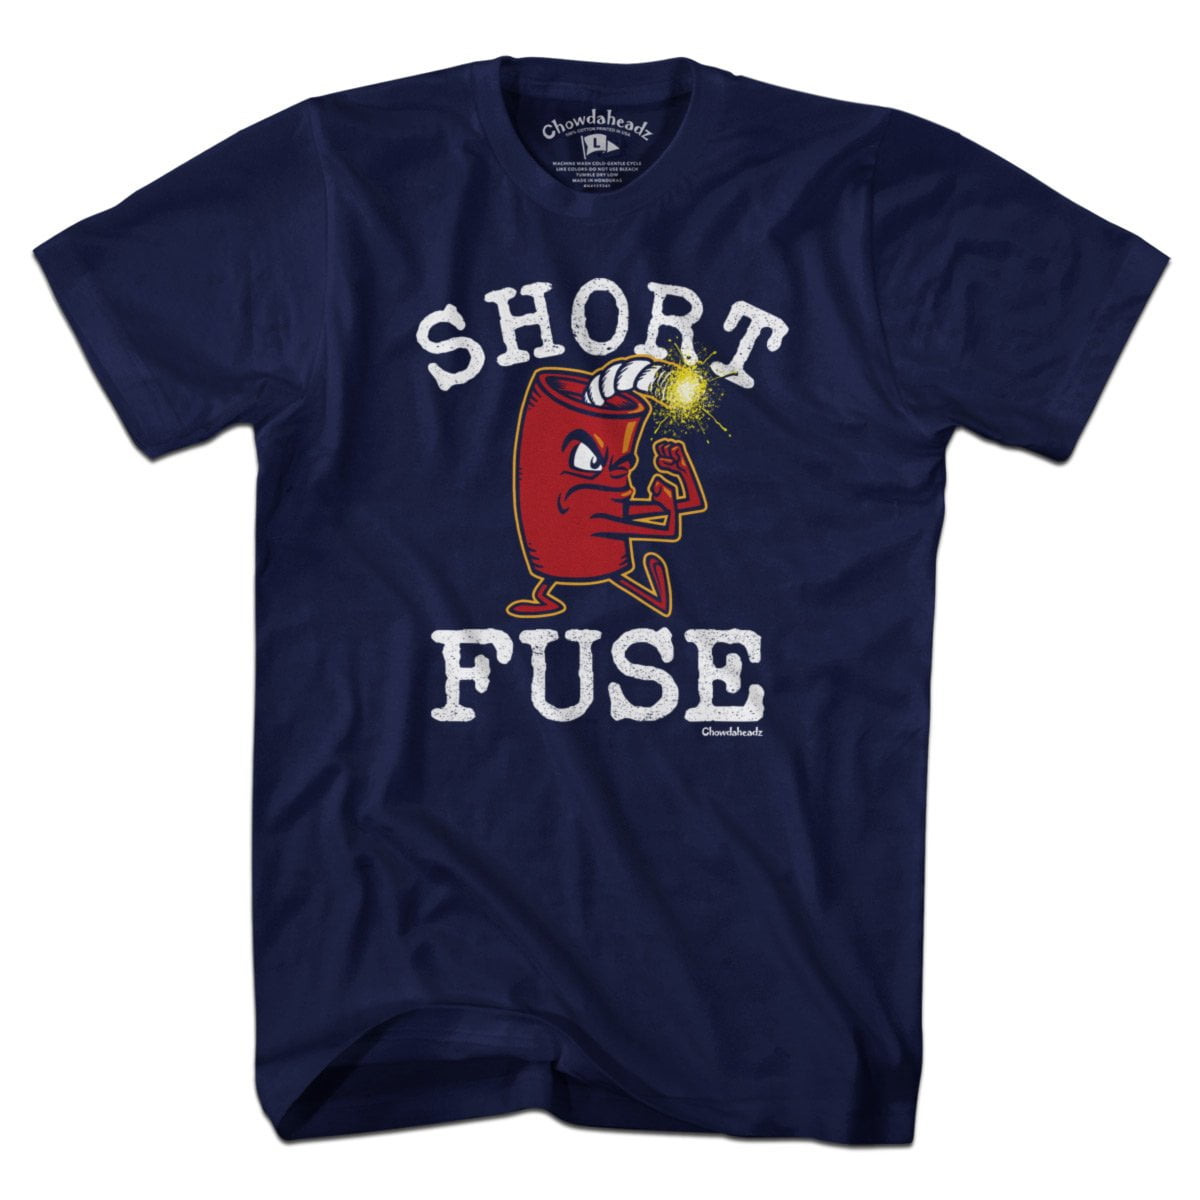 Short Fuse T-Shirt - Chowdaheadz